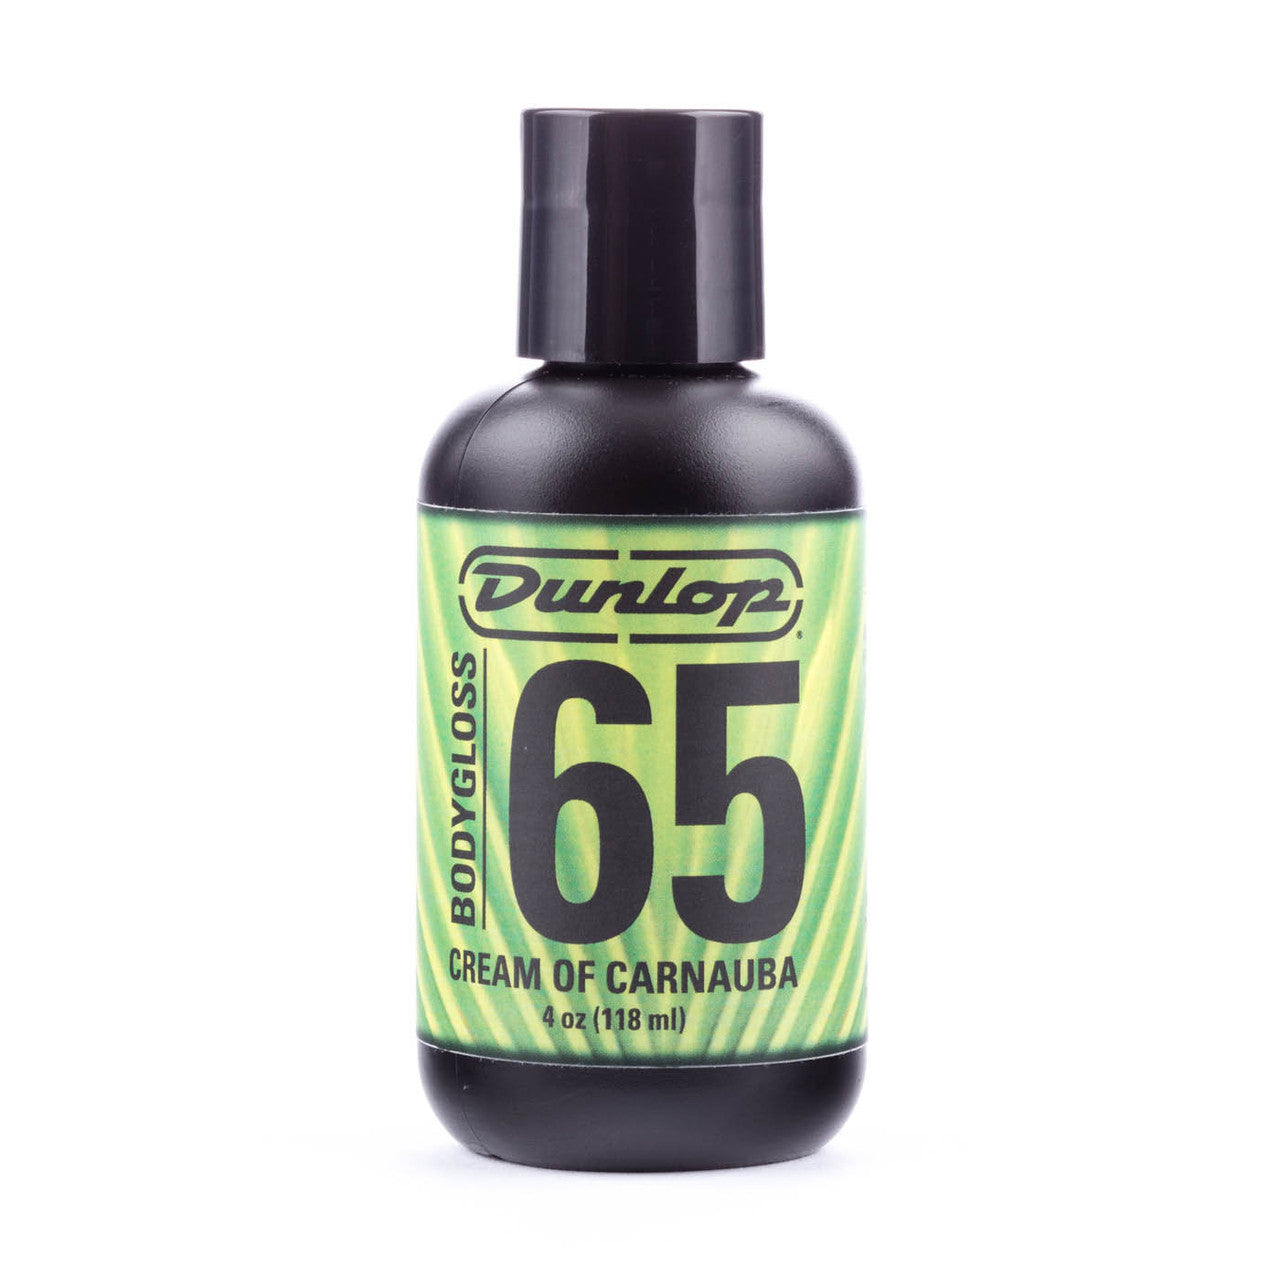 Dunlop 6574 Formula 65™ Bodygloss - 4oz (118ml)